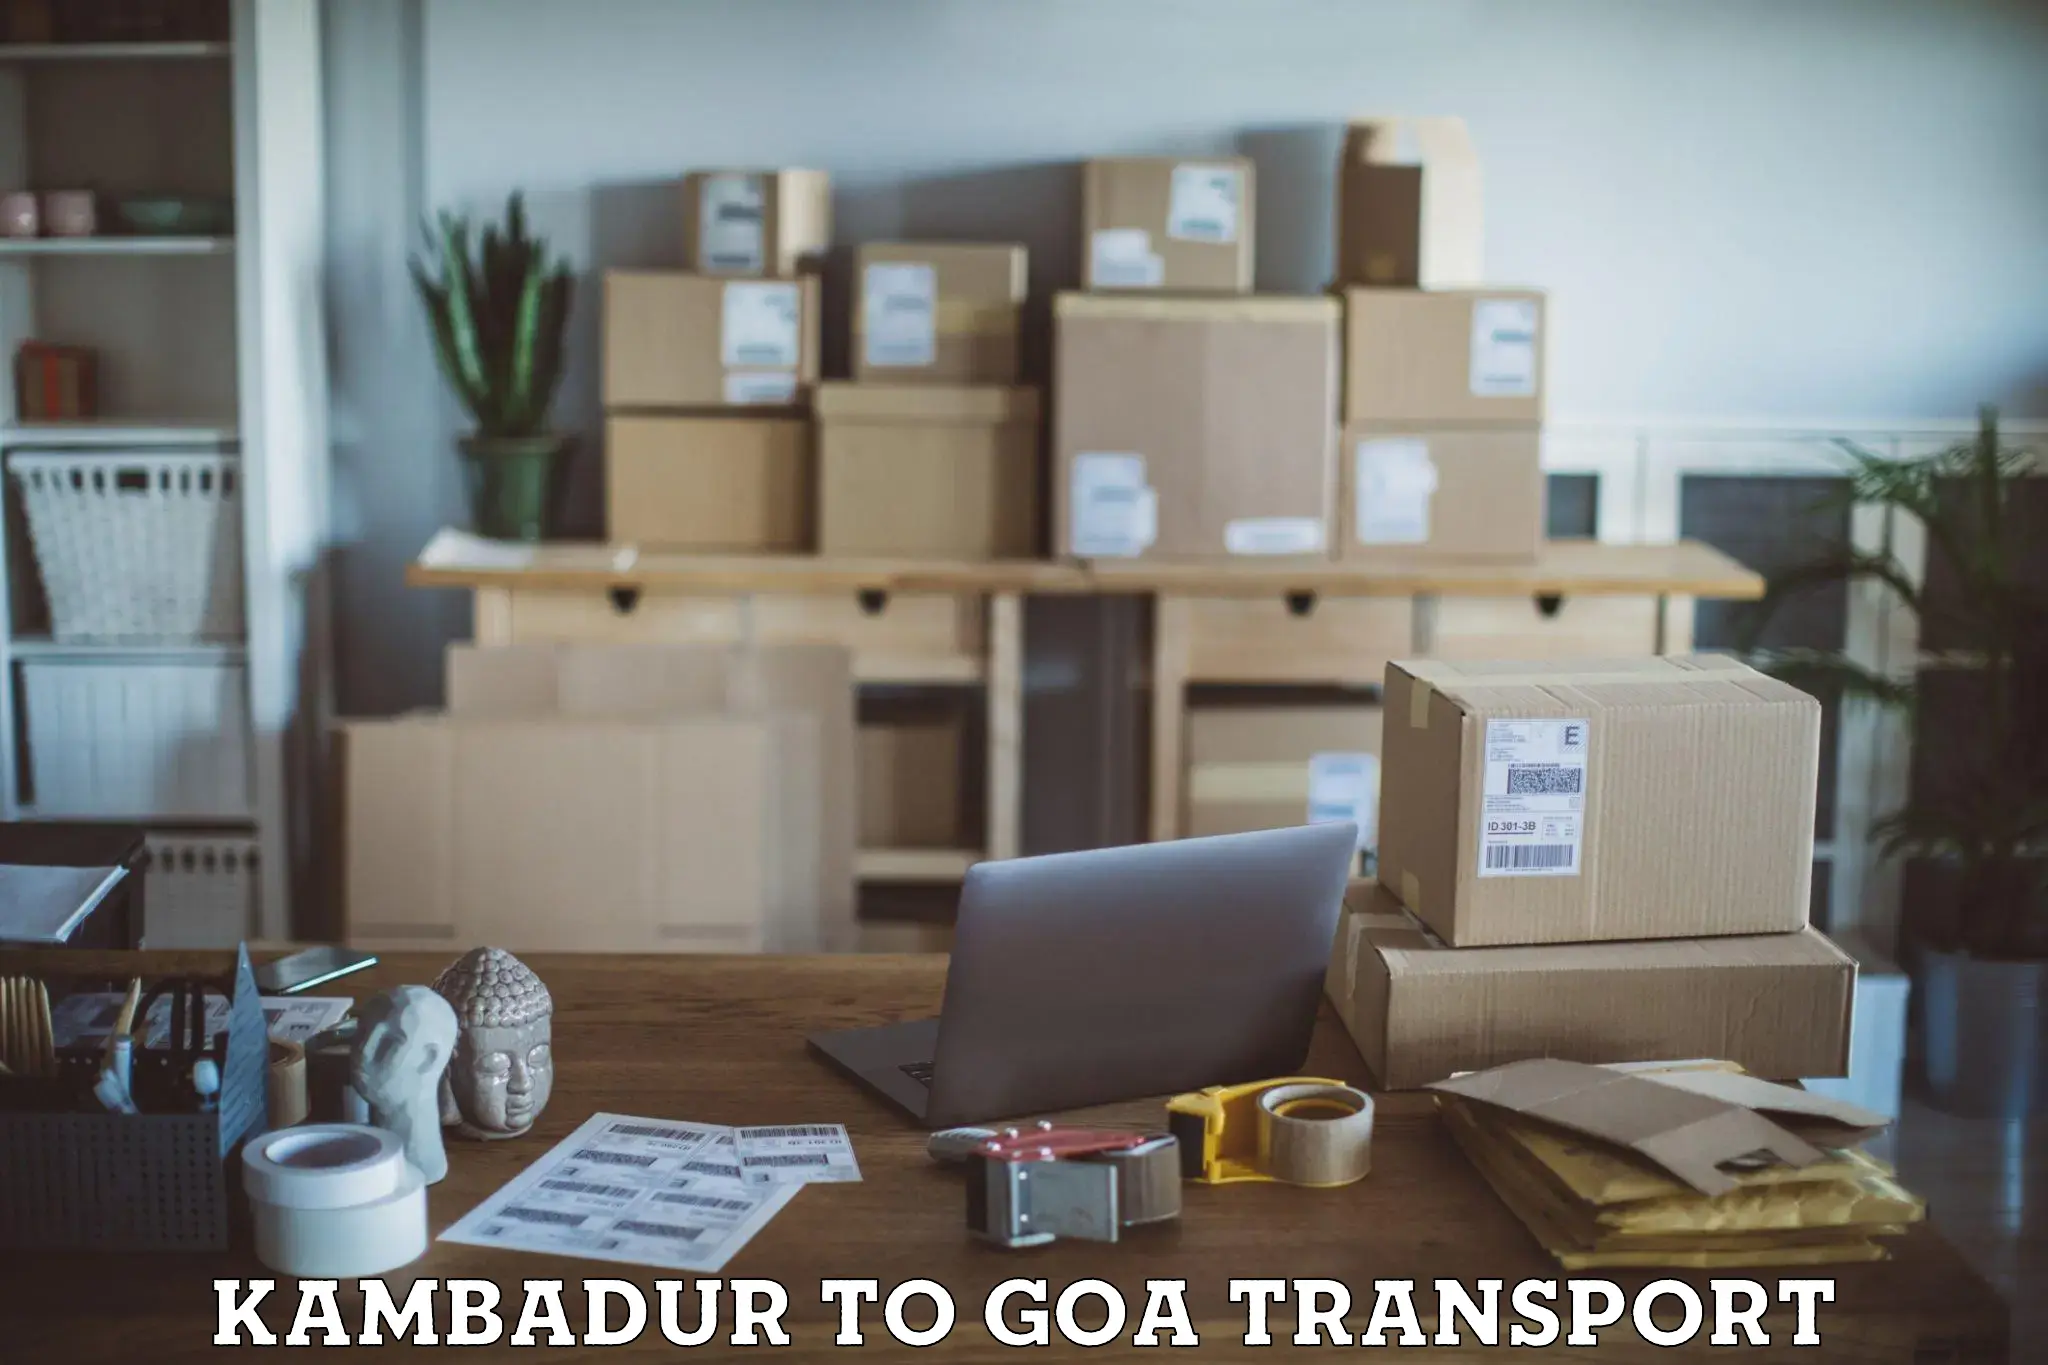 Scooty transport charges Kambadur to NIT Goa